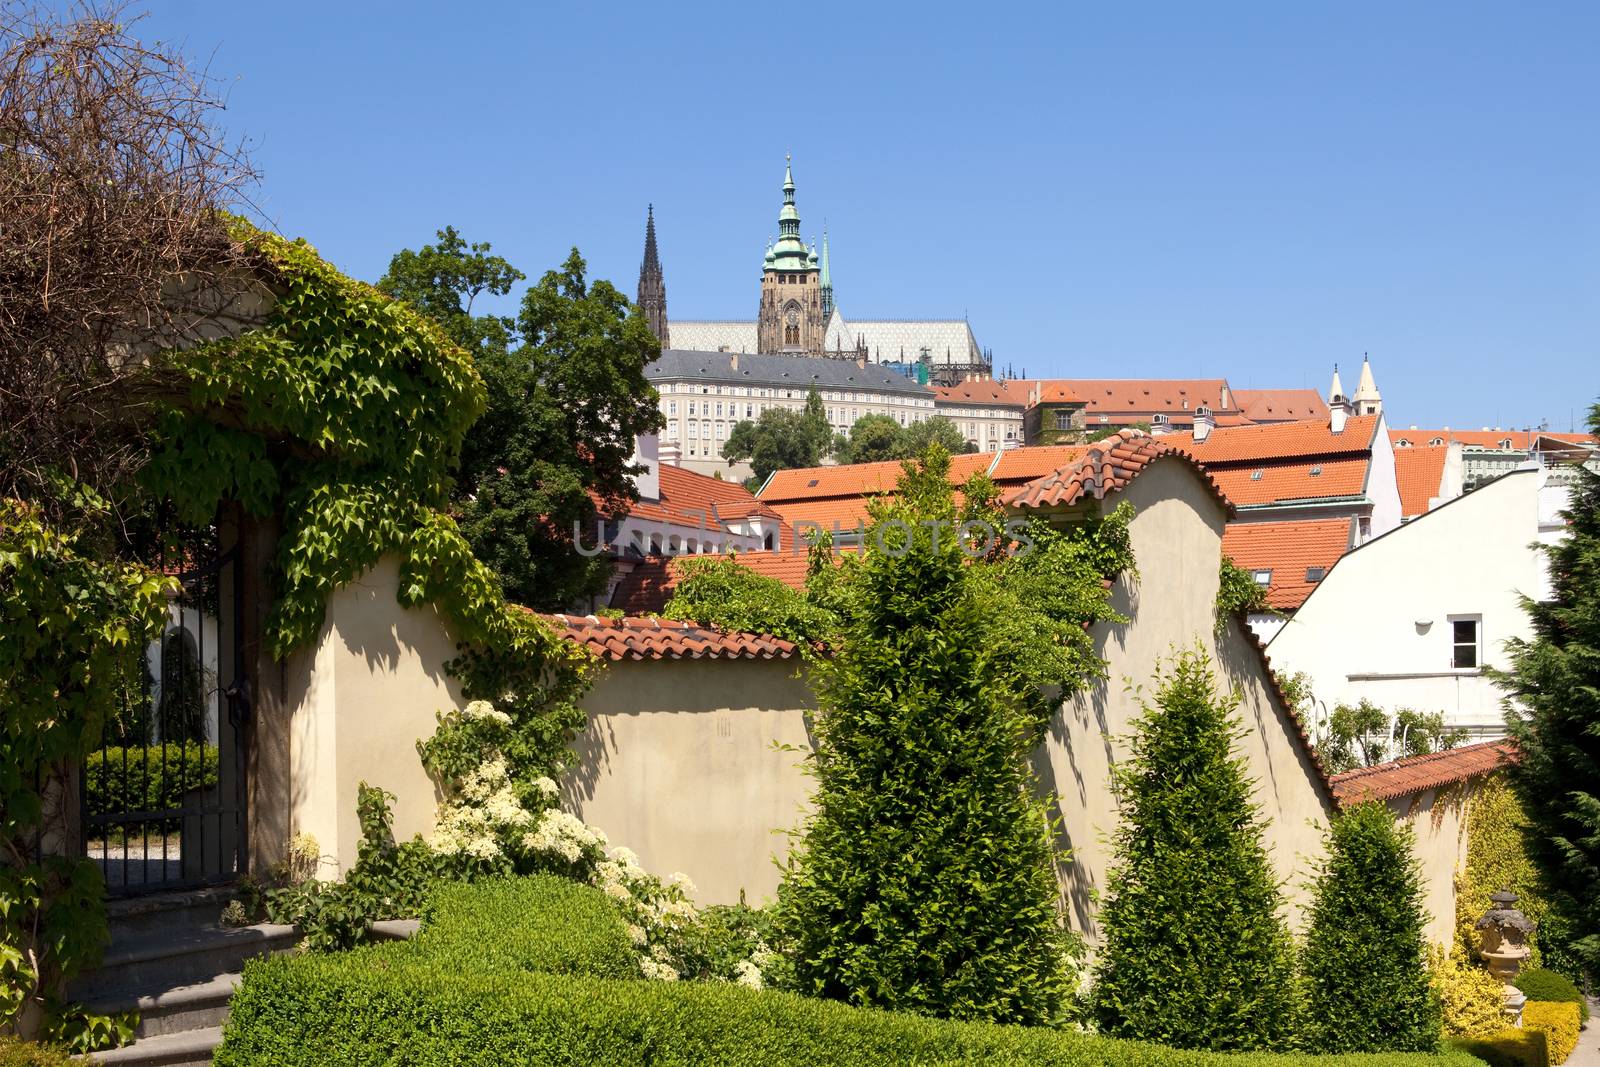 prague - vrtba garden and hradcany castle by courtyardpix